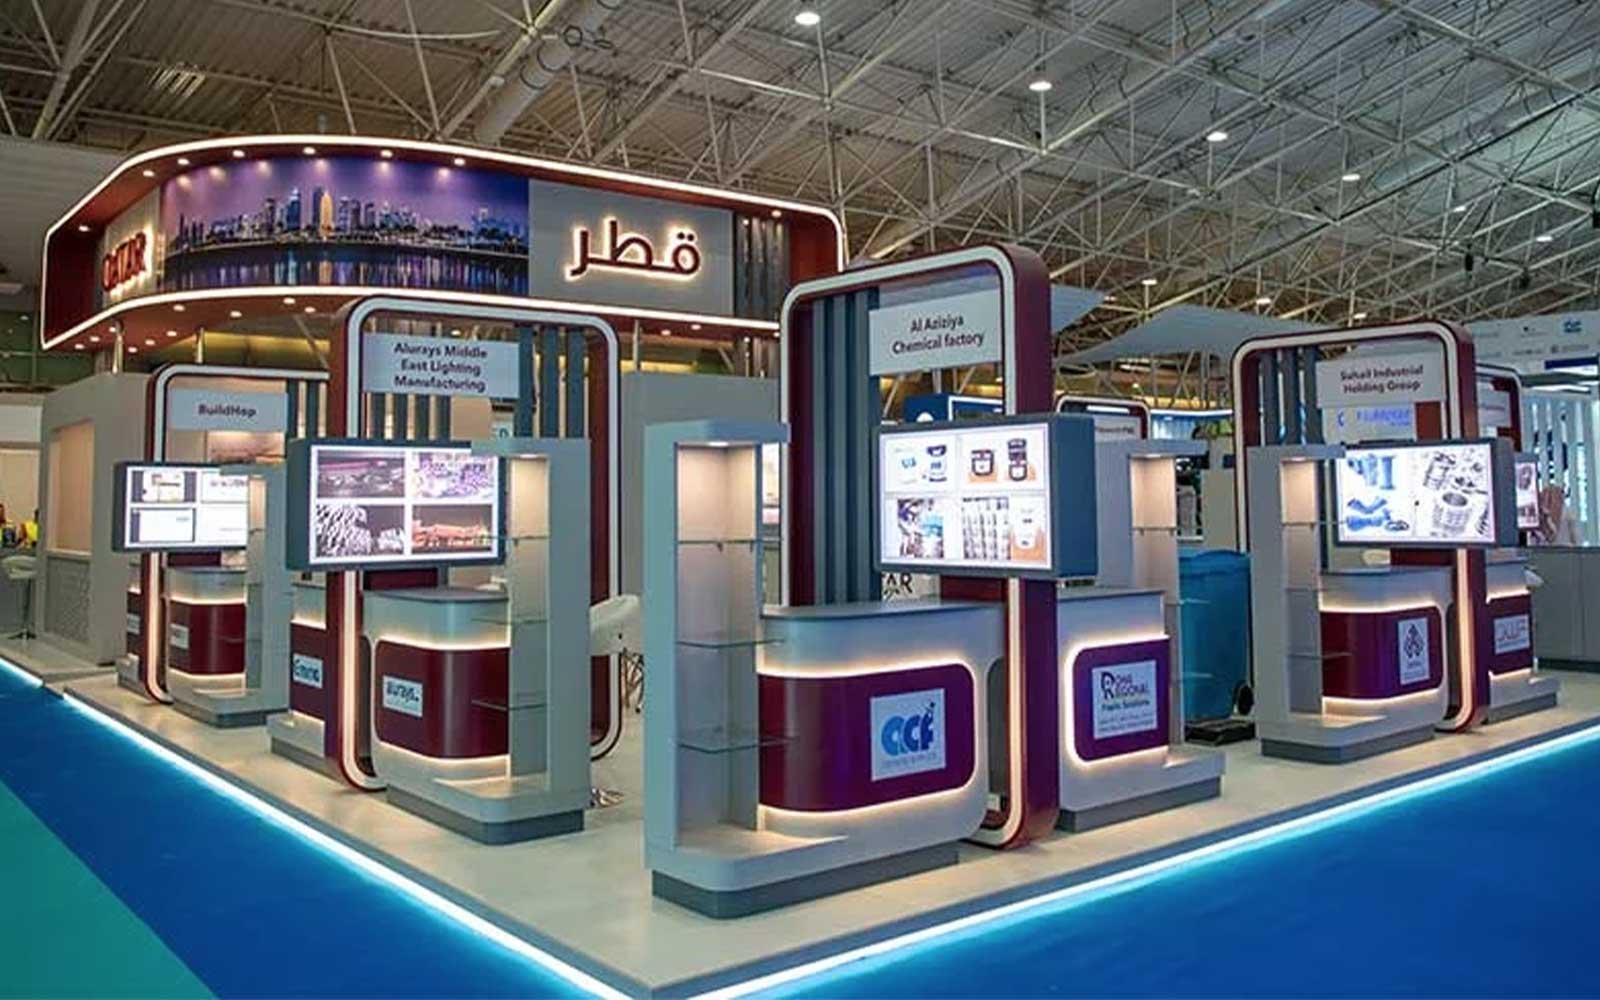 Qatar pavilion